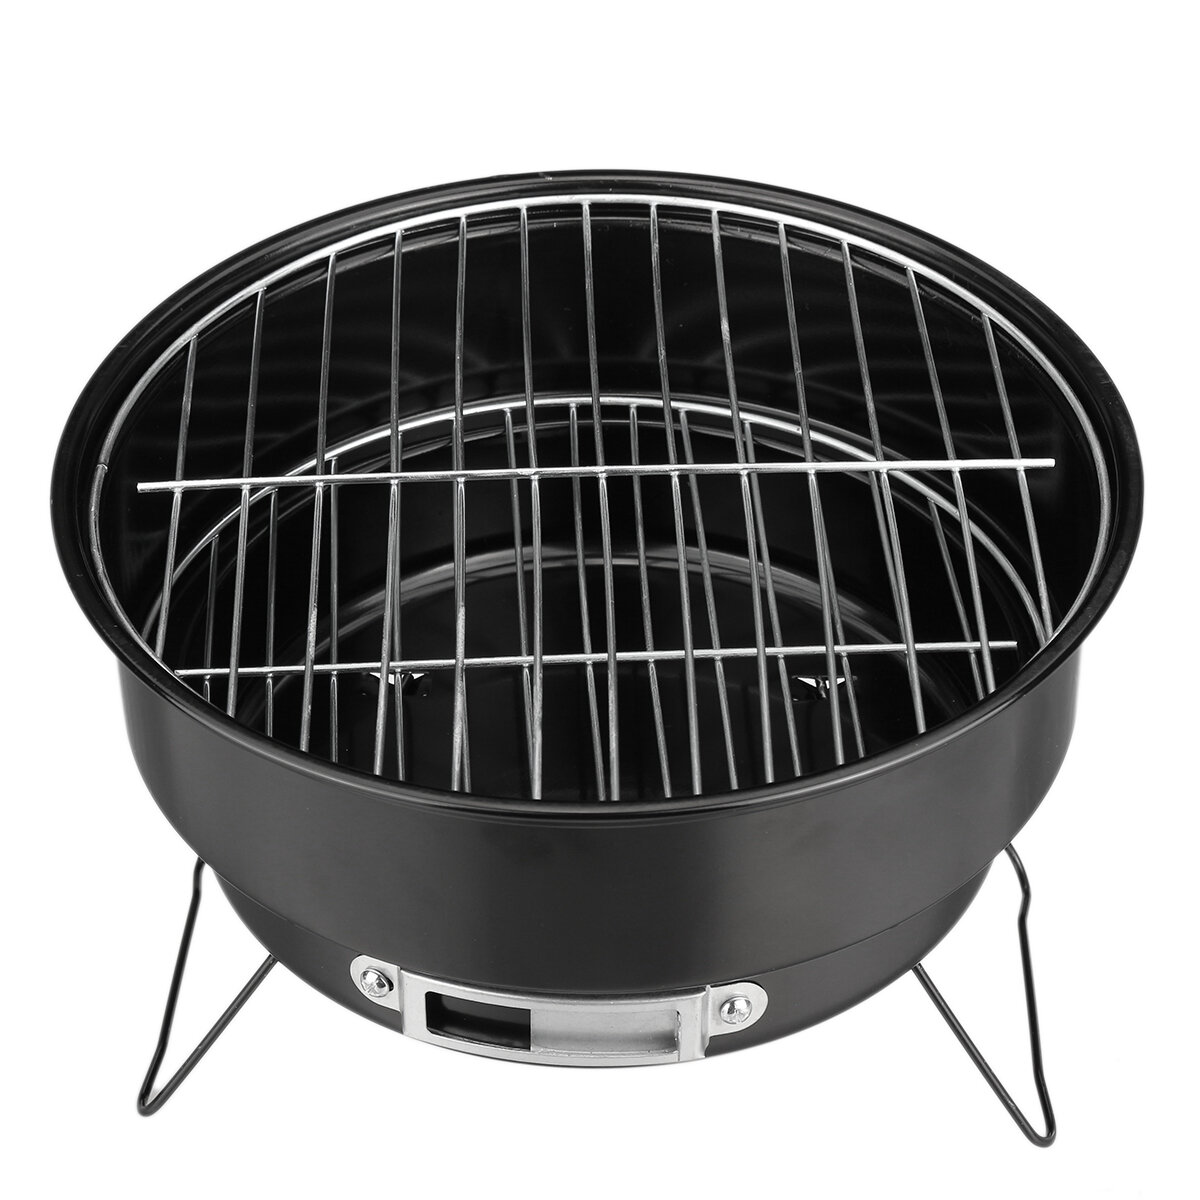 Gril de barbecue rond Gril en acier inoxydable pliable Gril de barbecue de camping en plein air portable